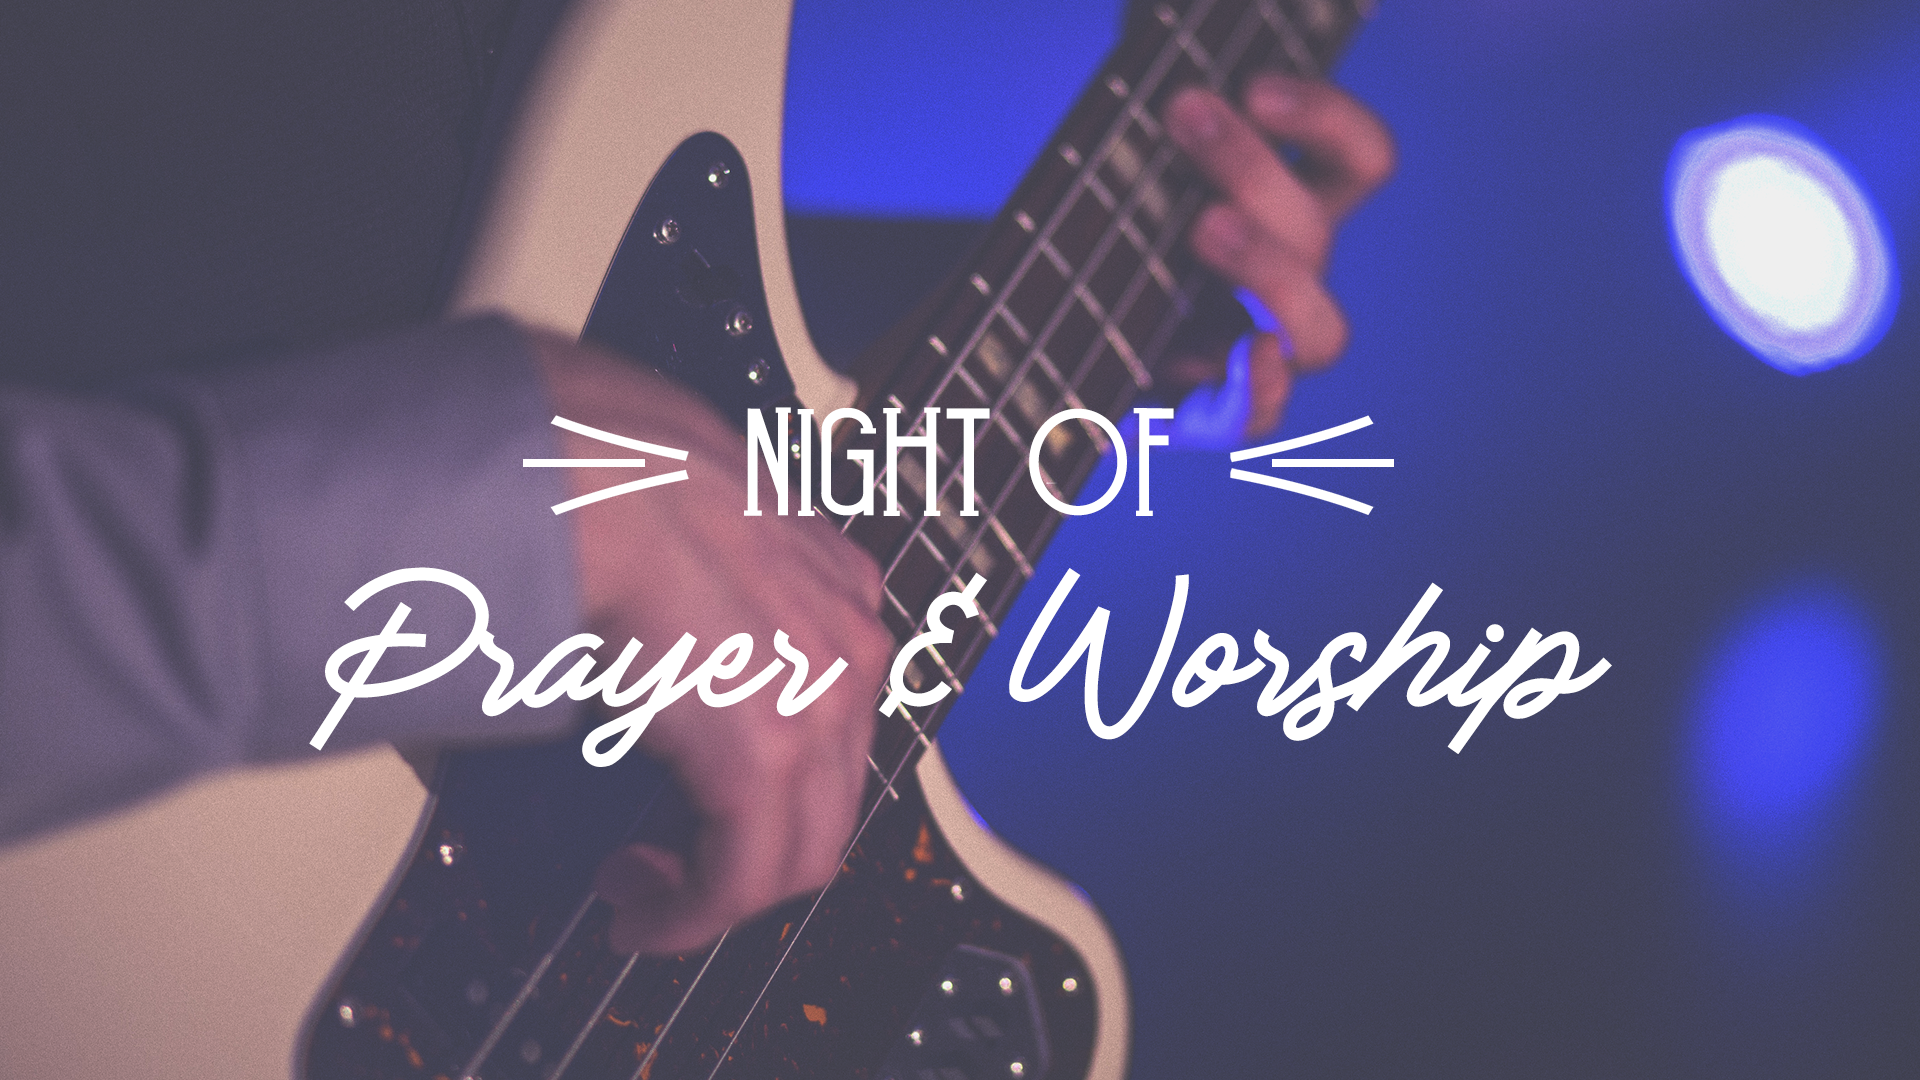 Night of Prayer and Worship